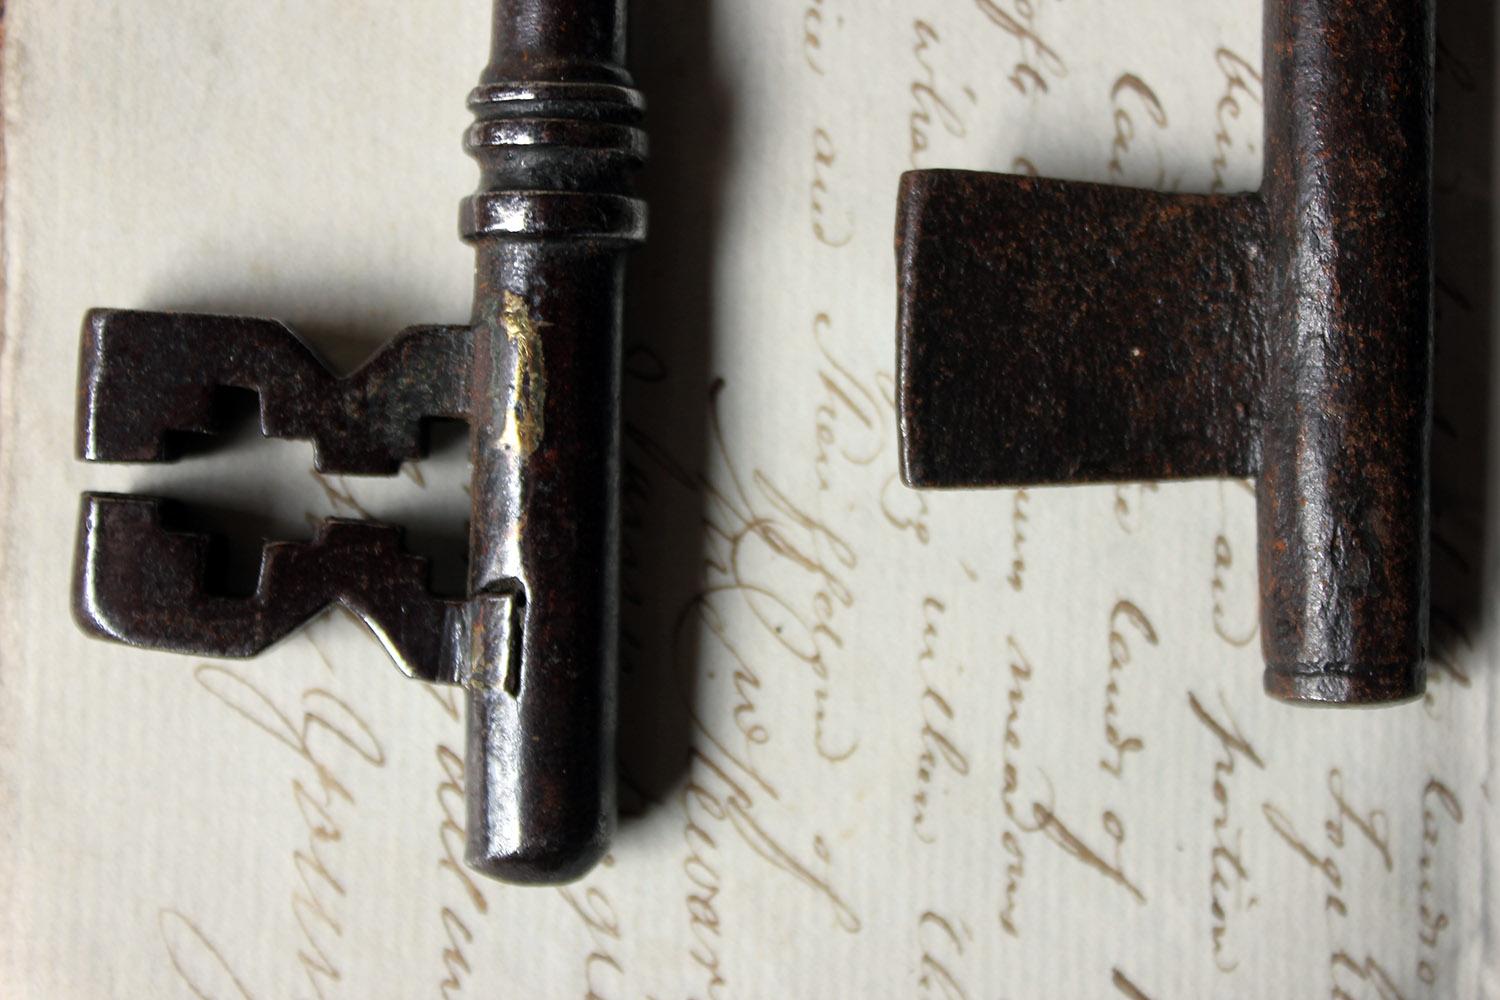 Iron Collection of Seven Antique Keys, circa 1790-1850